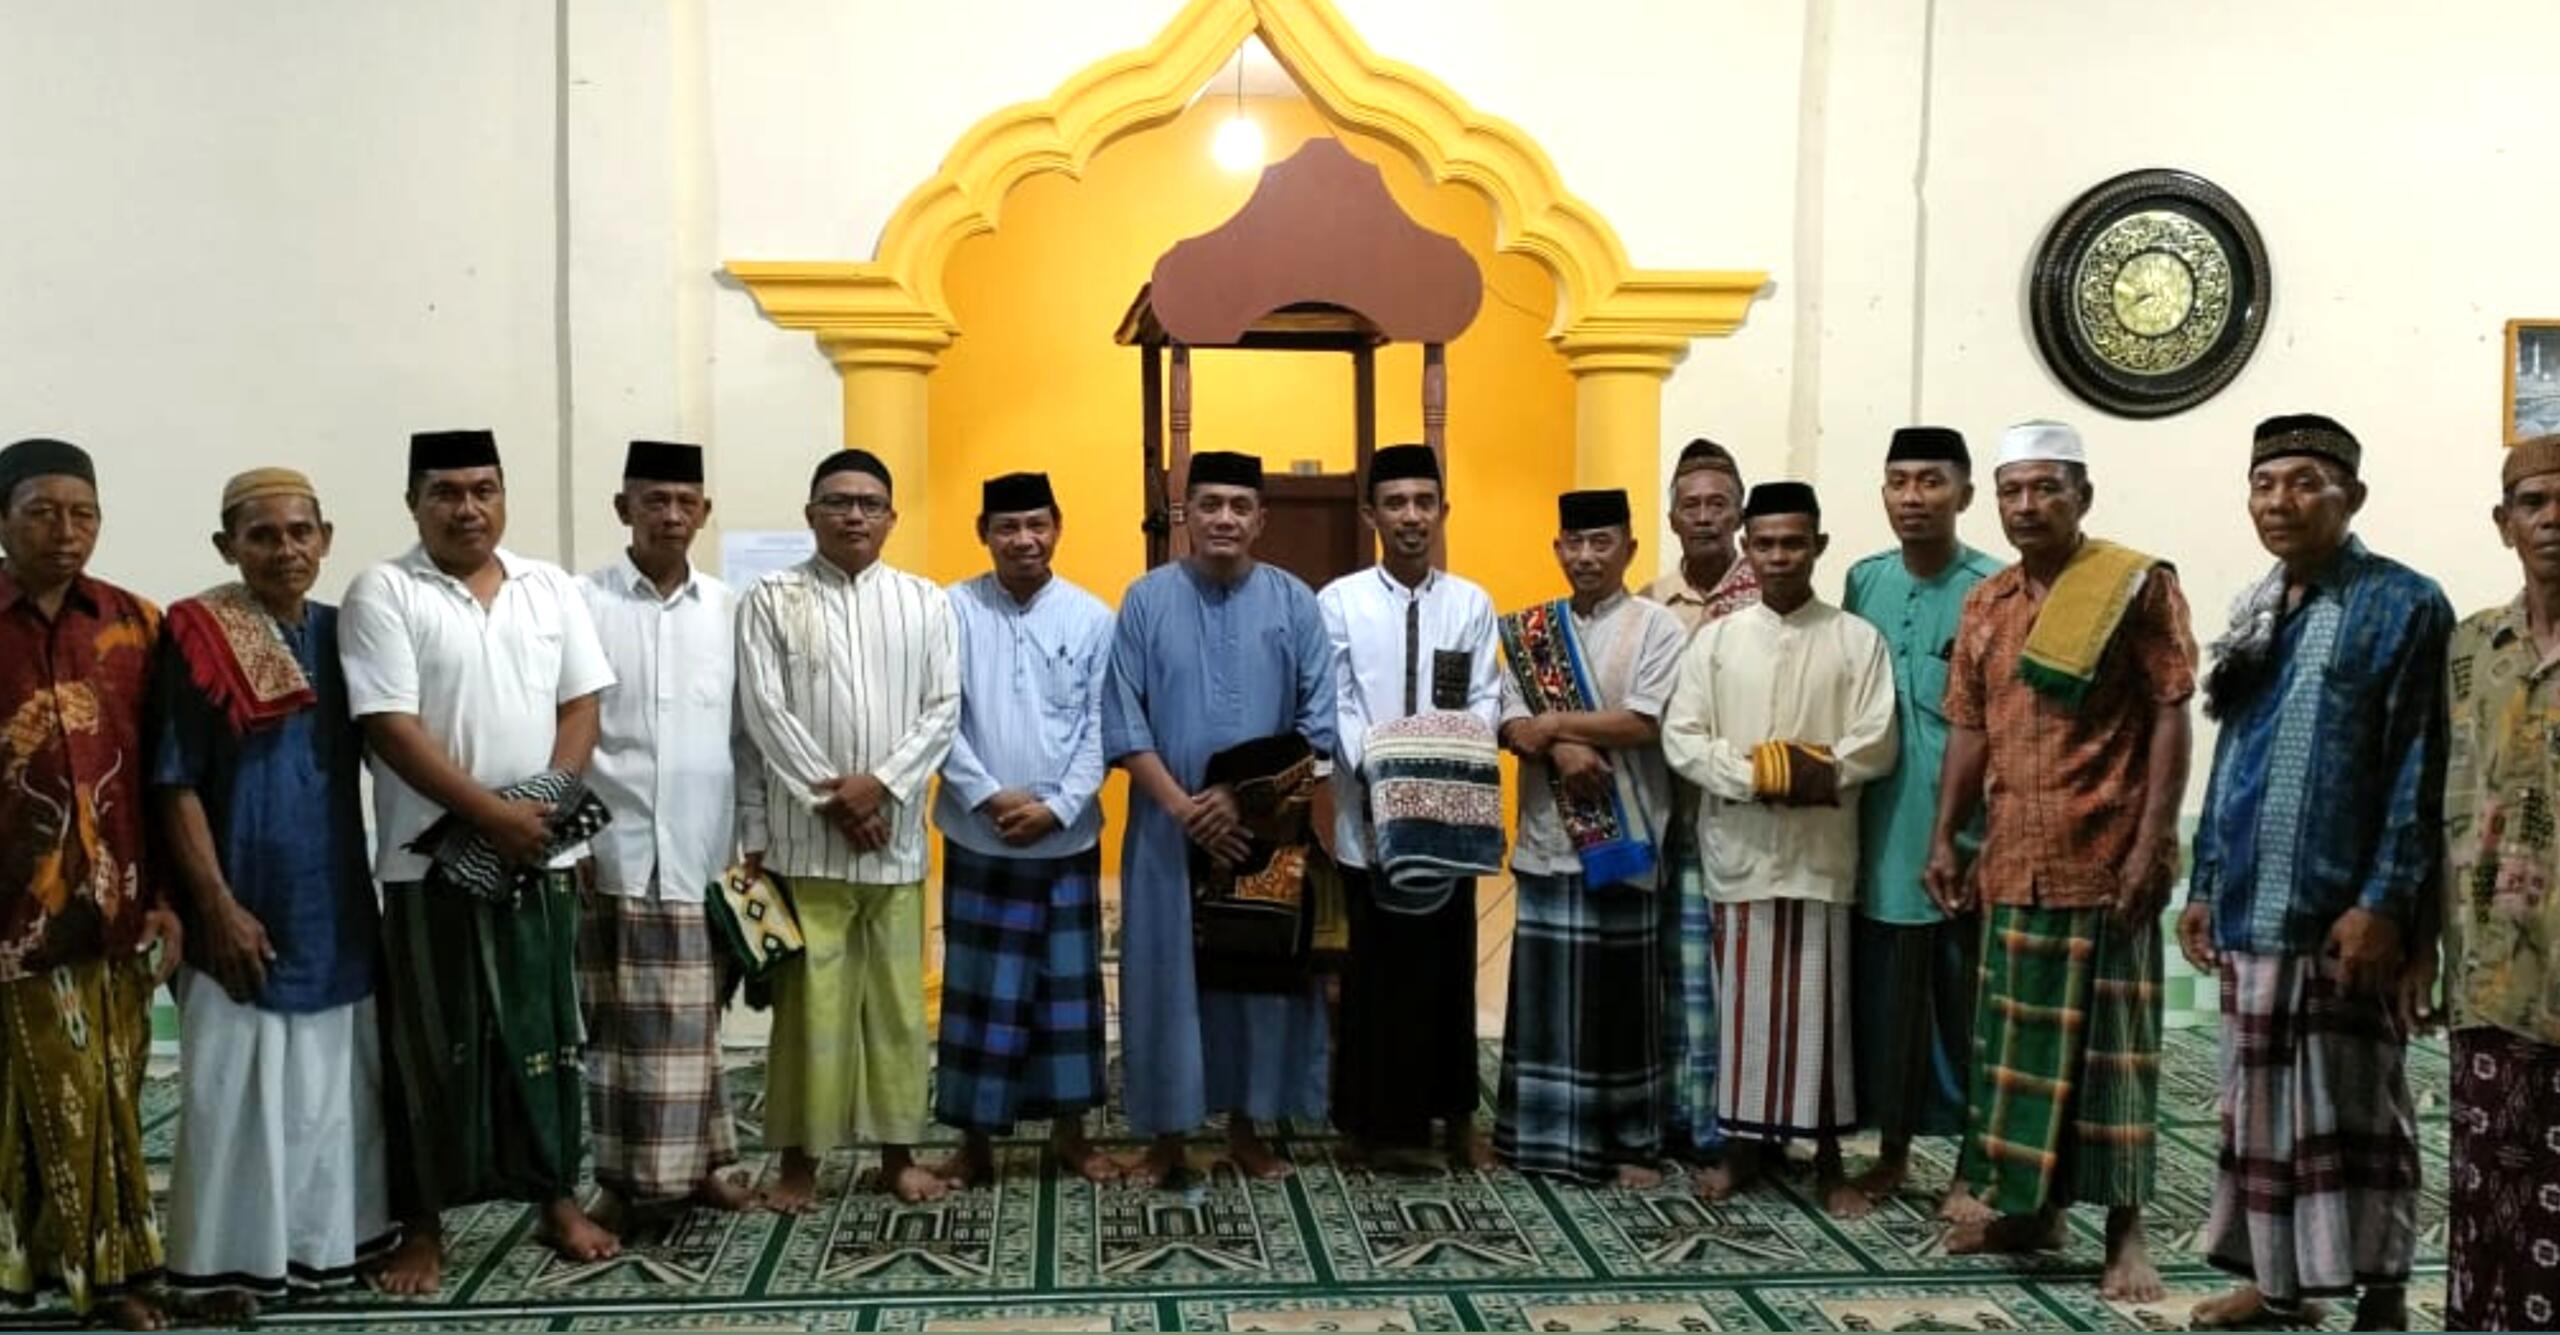 Mulai Safari Ramadhan ke Desa-desa, Camat Duhiada Himbau Makmurkan Masjid